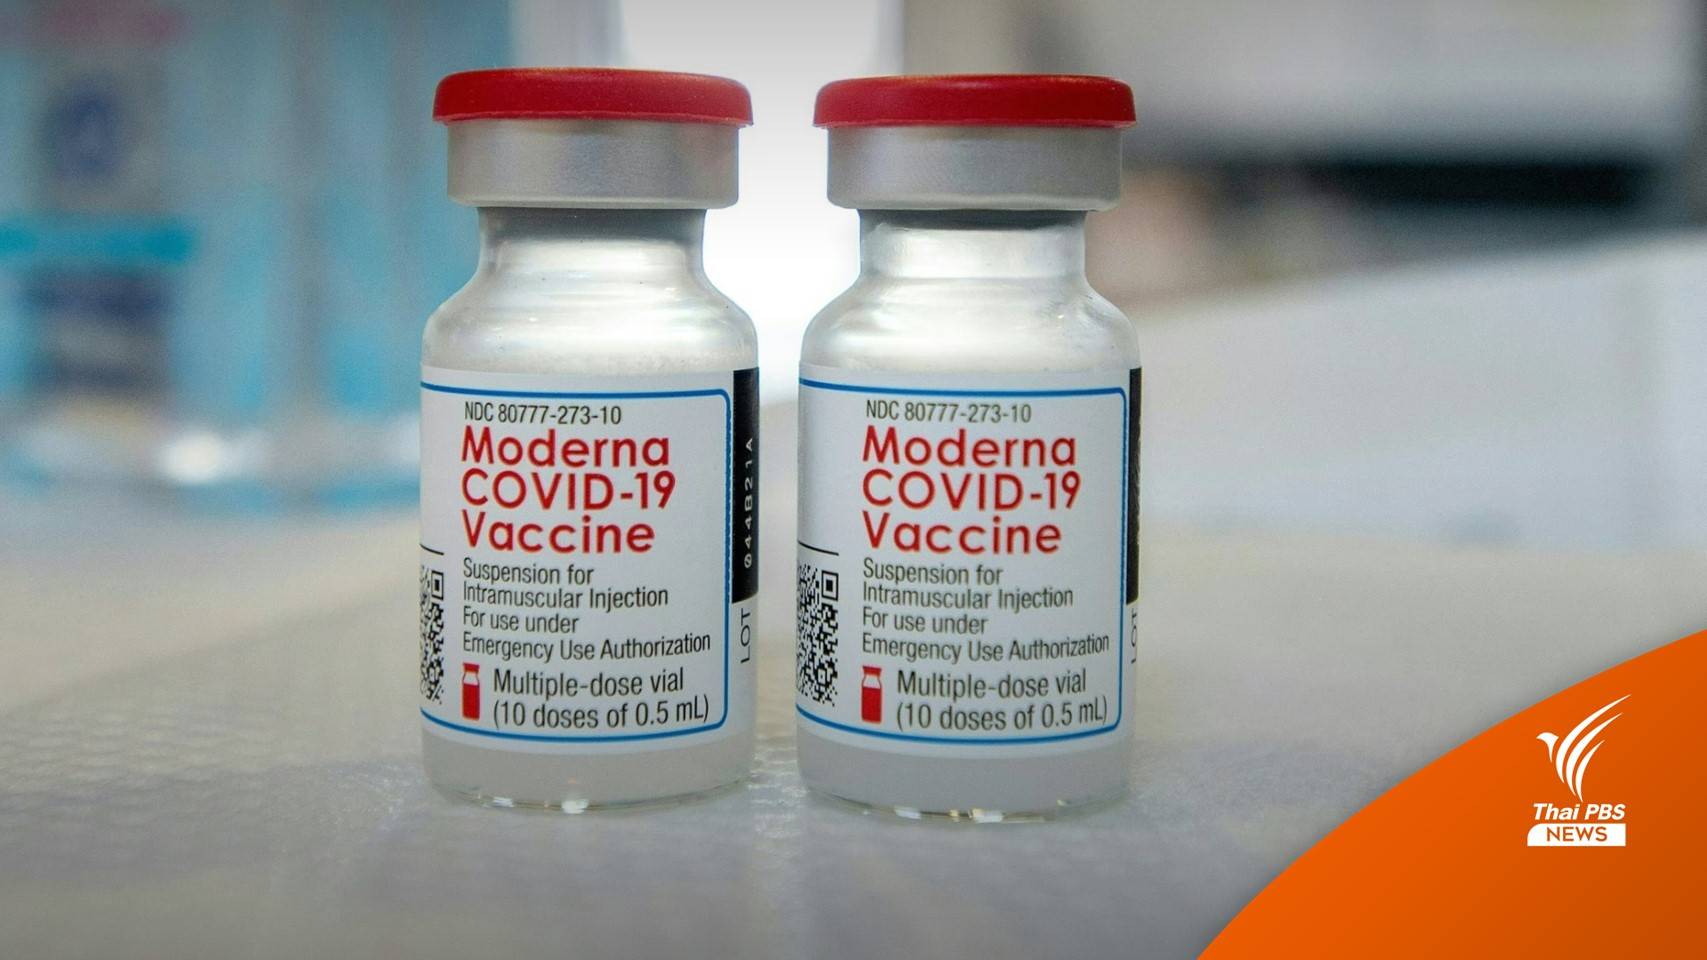 วัคซีน "โมเดอร์นา" อีก 1.4 ล้านโดส คาดถึงไทยปลายเดือน พ.ย.64